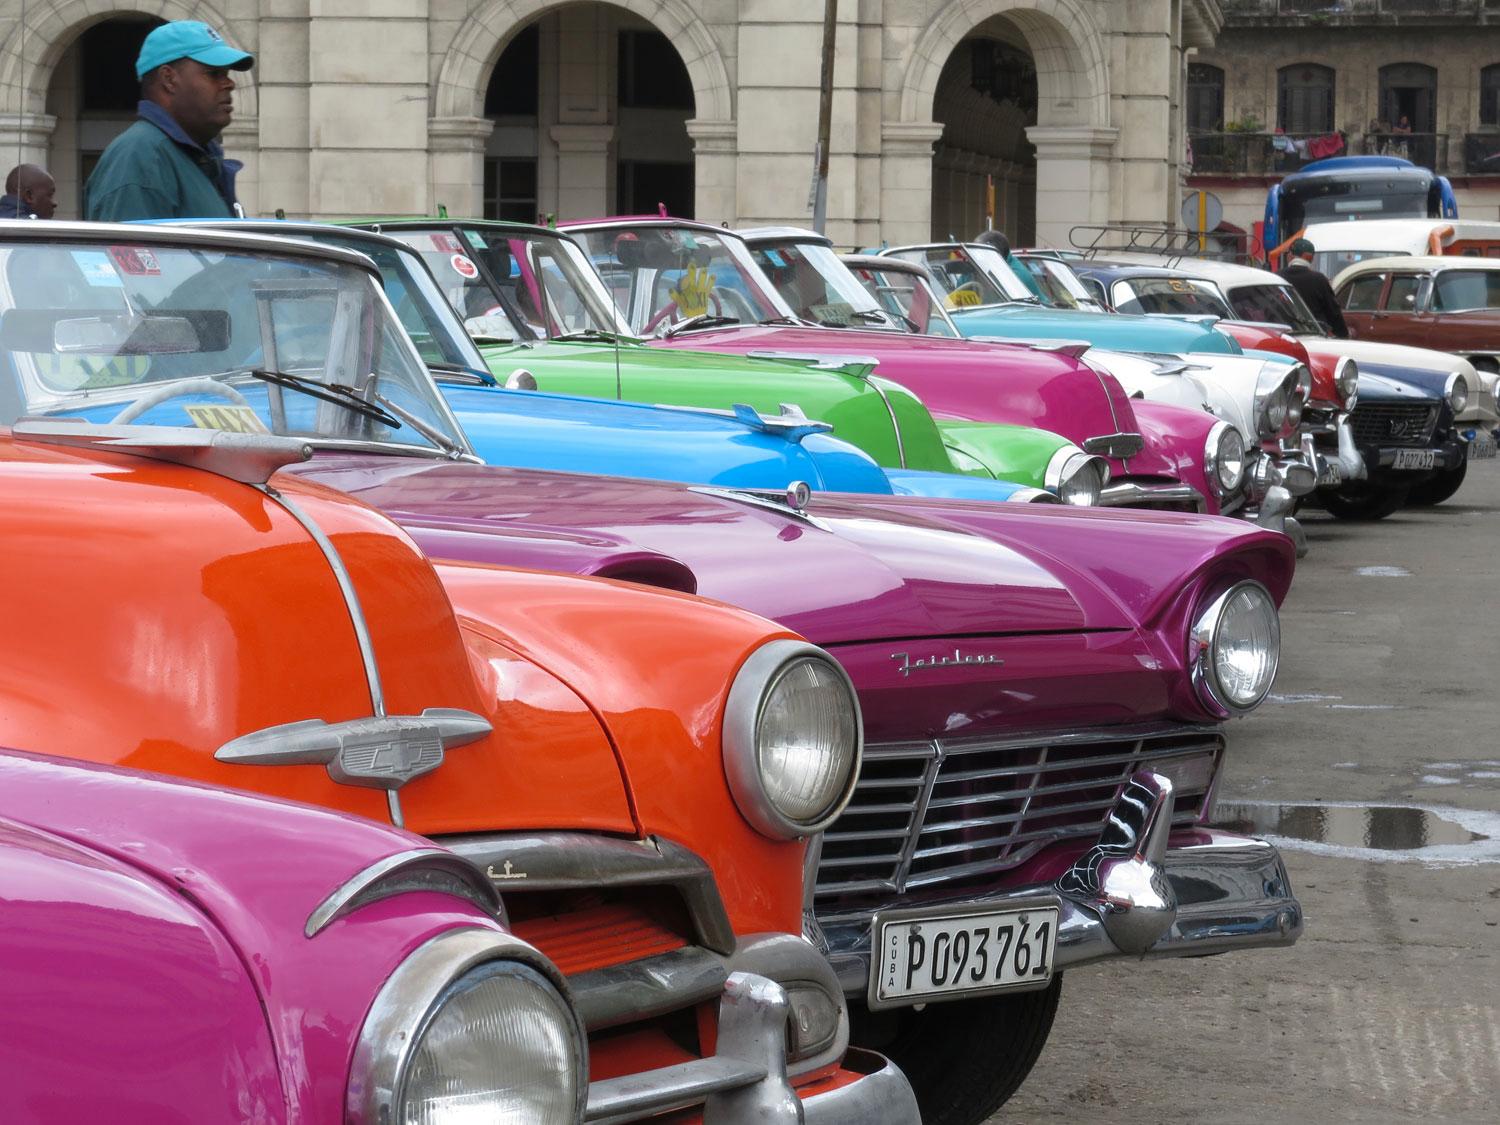 Taxi-cabbar på rad vid Parque Central i Havanna. En timmes rundtur i stan kostar 30 Cuc, alltså turistvalutan "Convertibla pesos", ungefär 250 kronor.